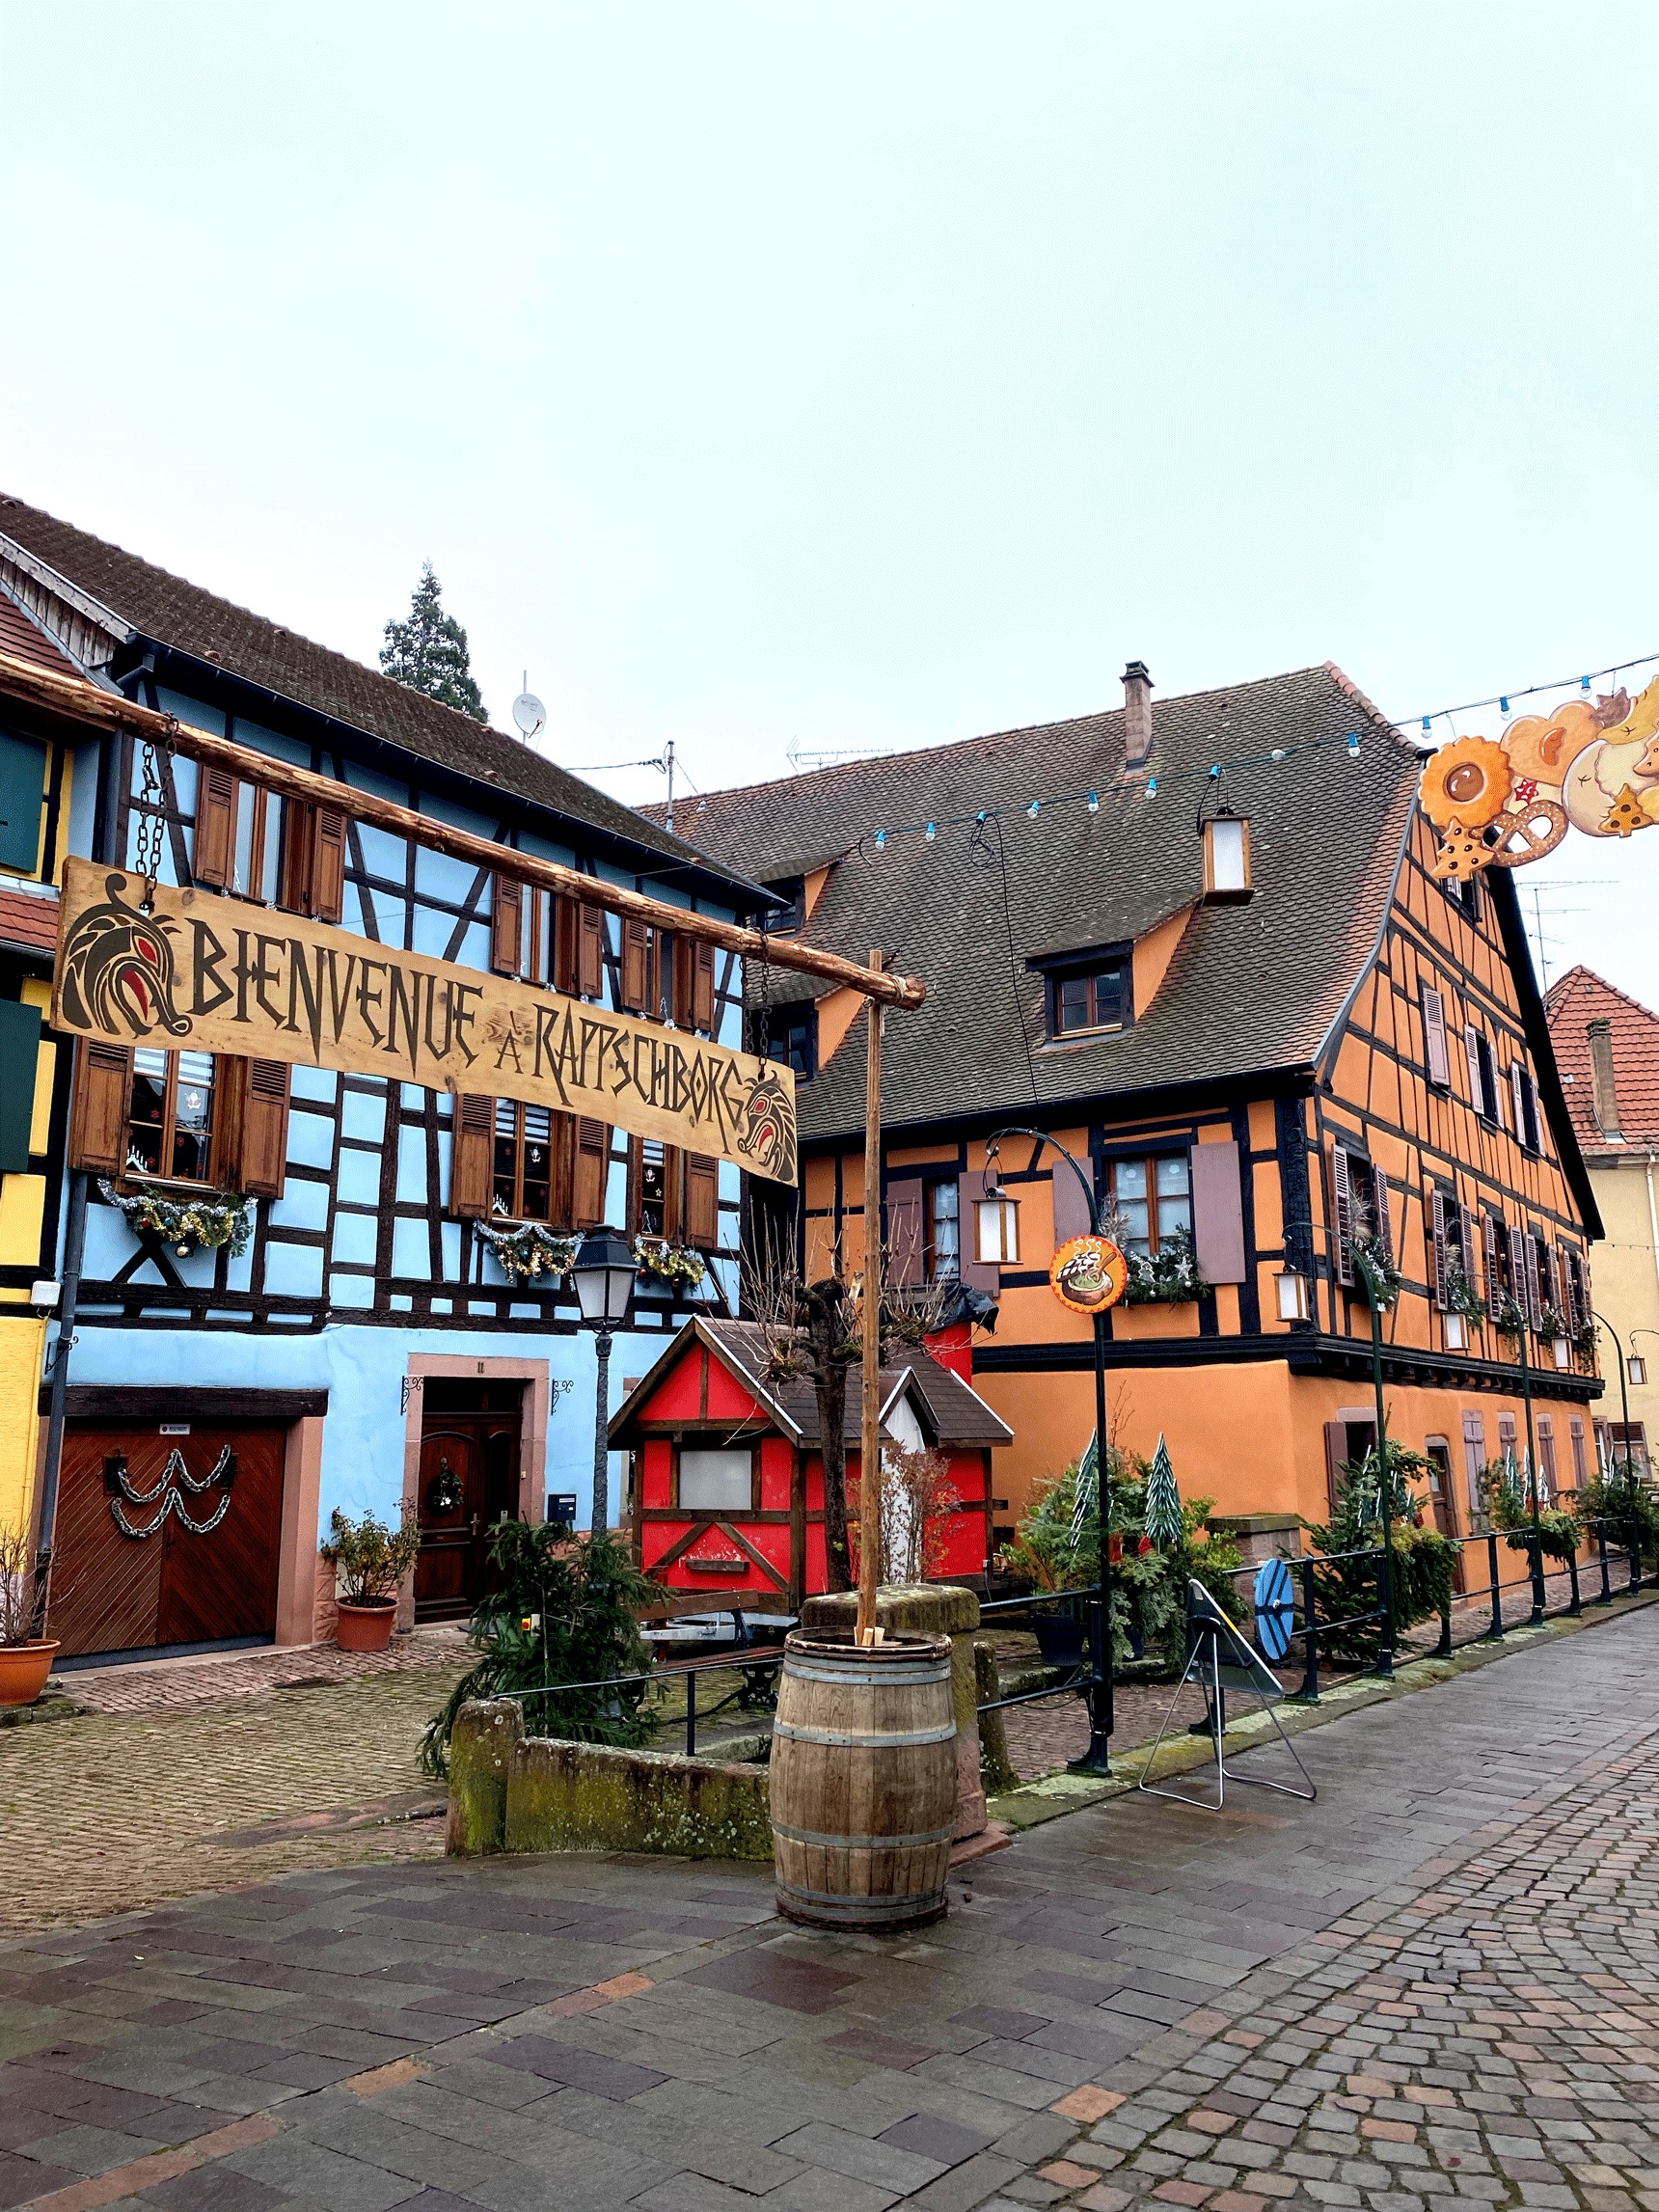 Visitez le marché de Noël de Ribeauvillé en Alsace